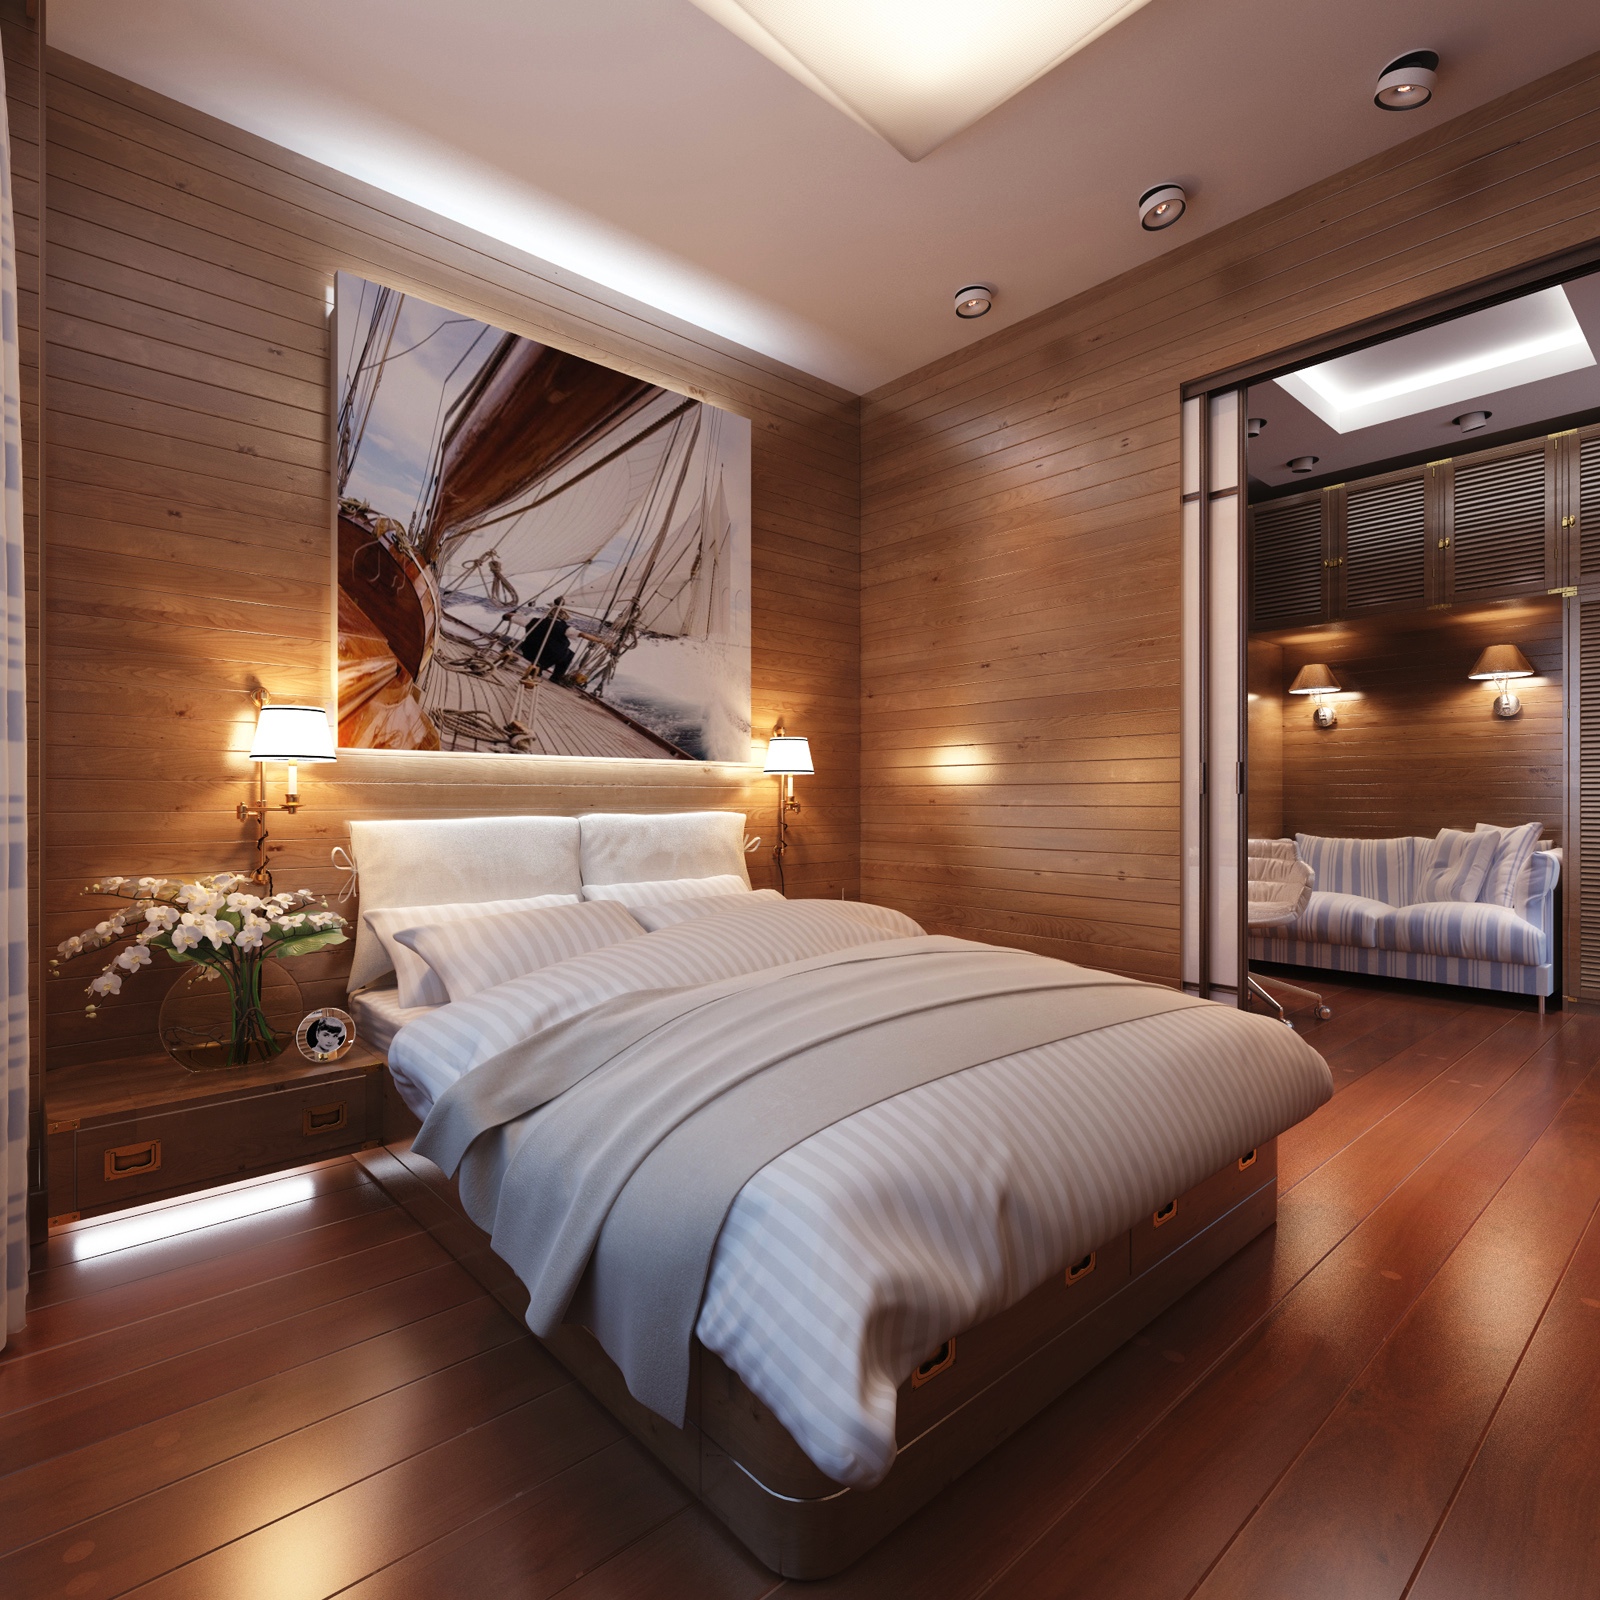 Cabin style bedroom decor Interior Design Ideas